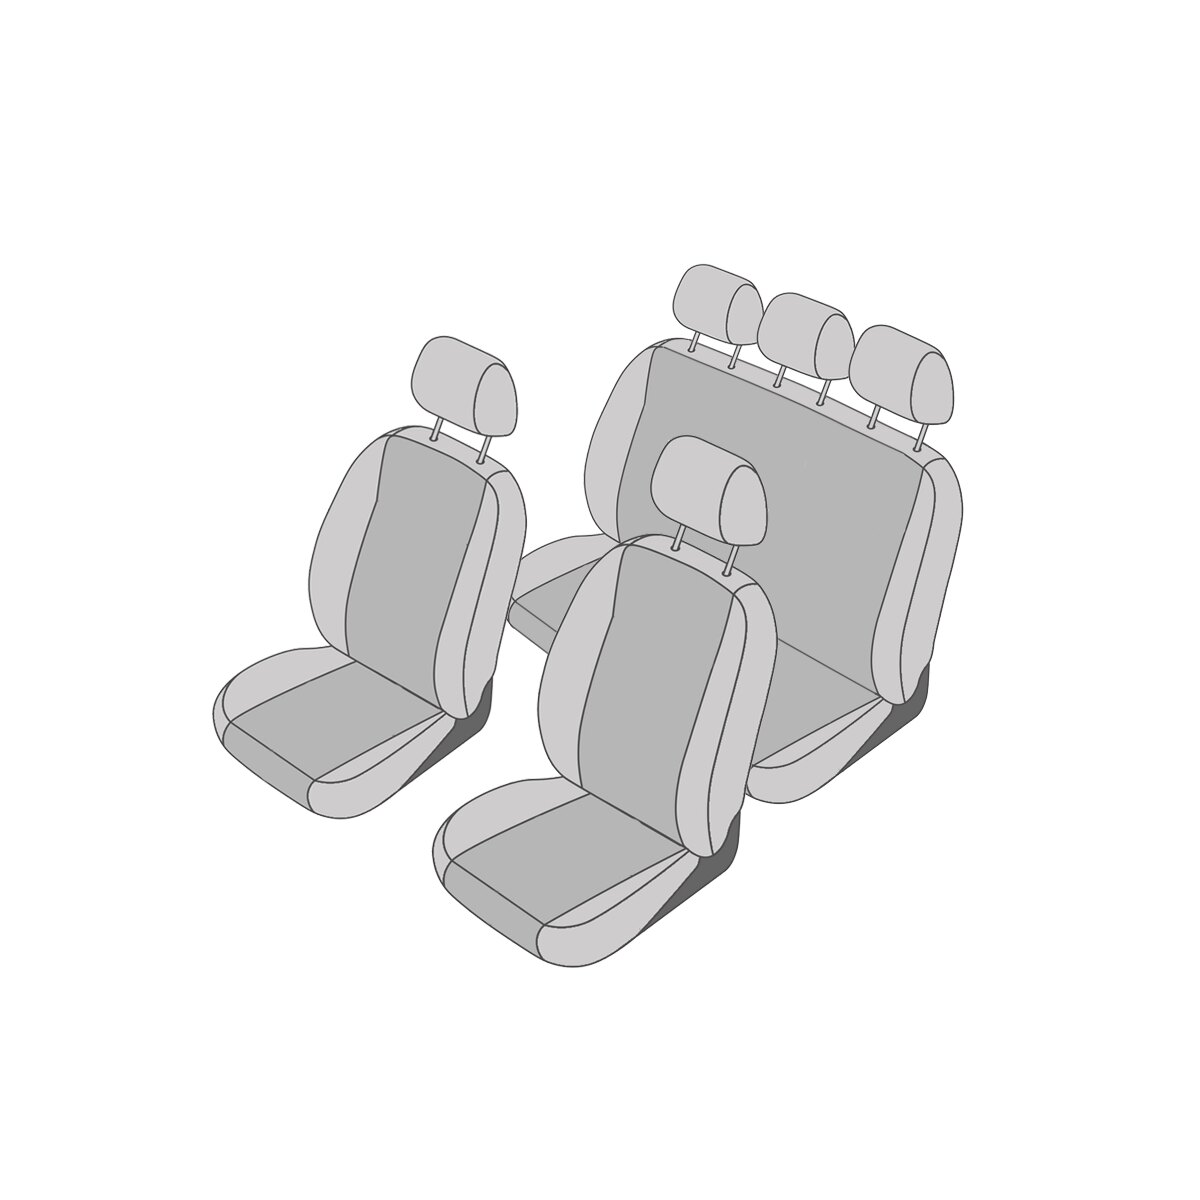 Mercedes Vito Mixto W639 Sitzbezüge für vorne und hinten (5-Sitzer